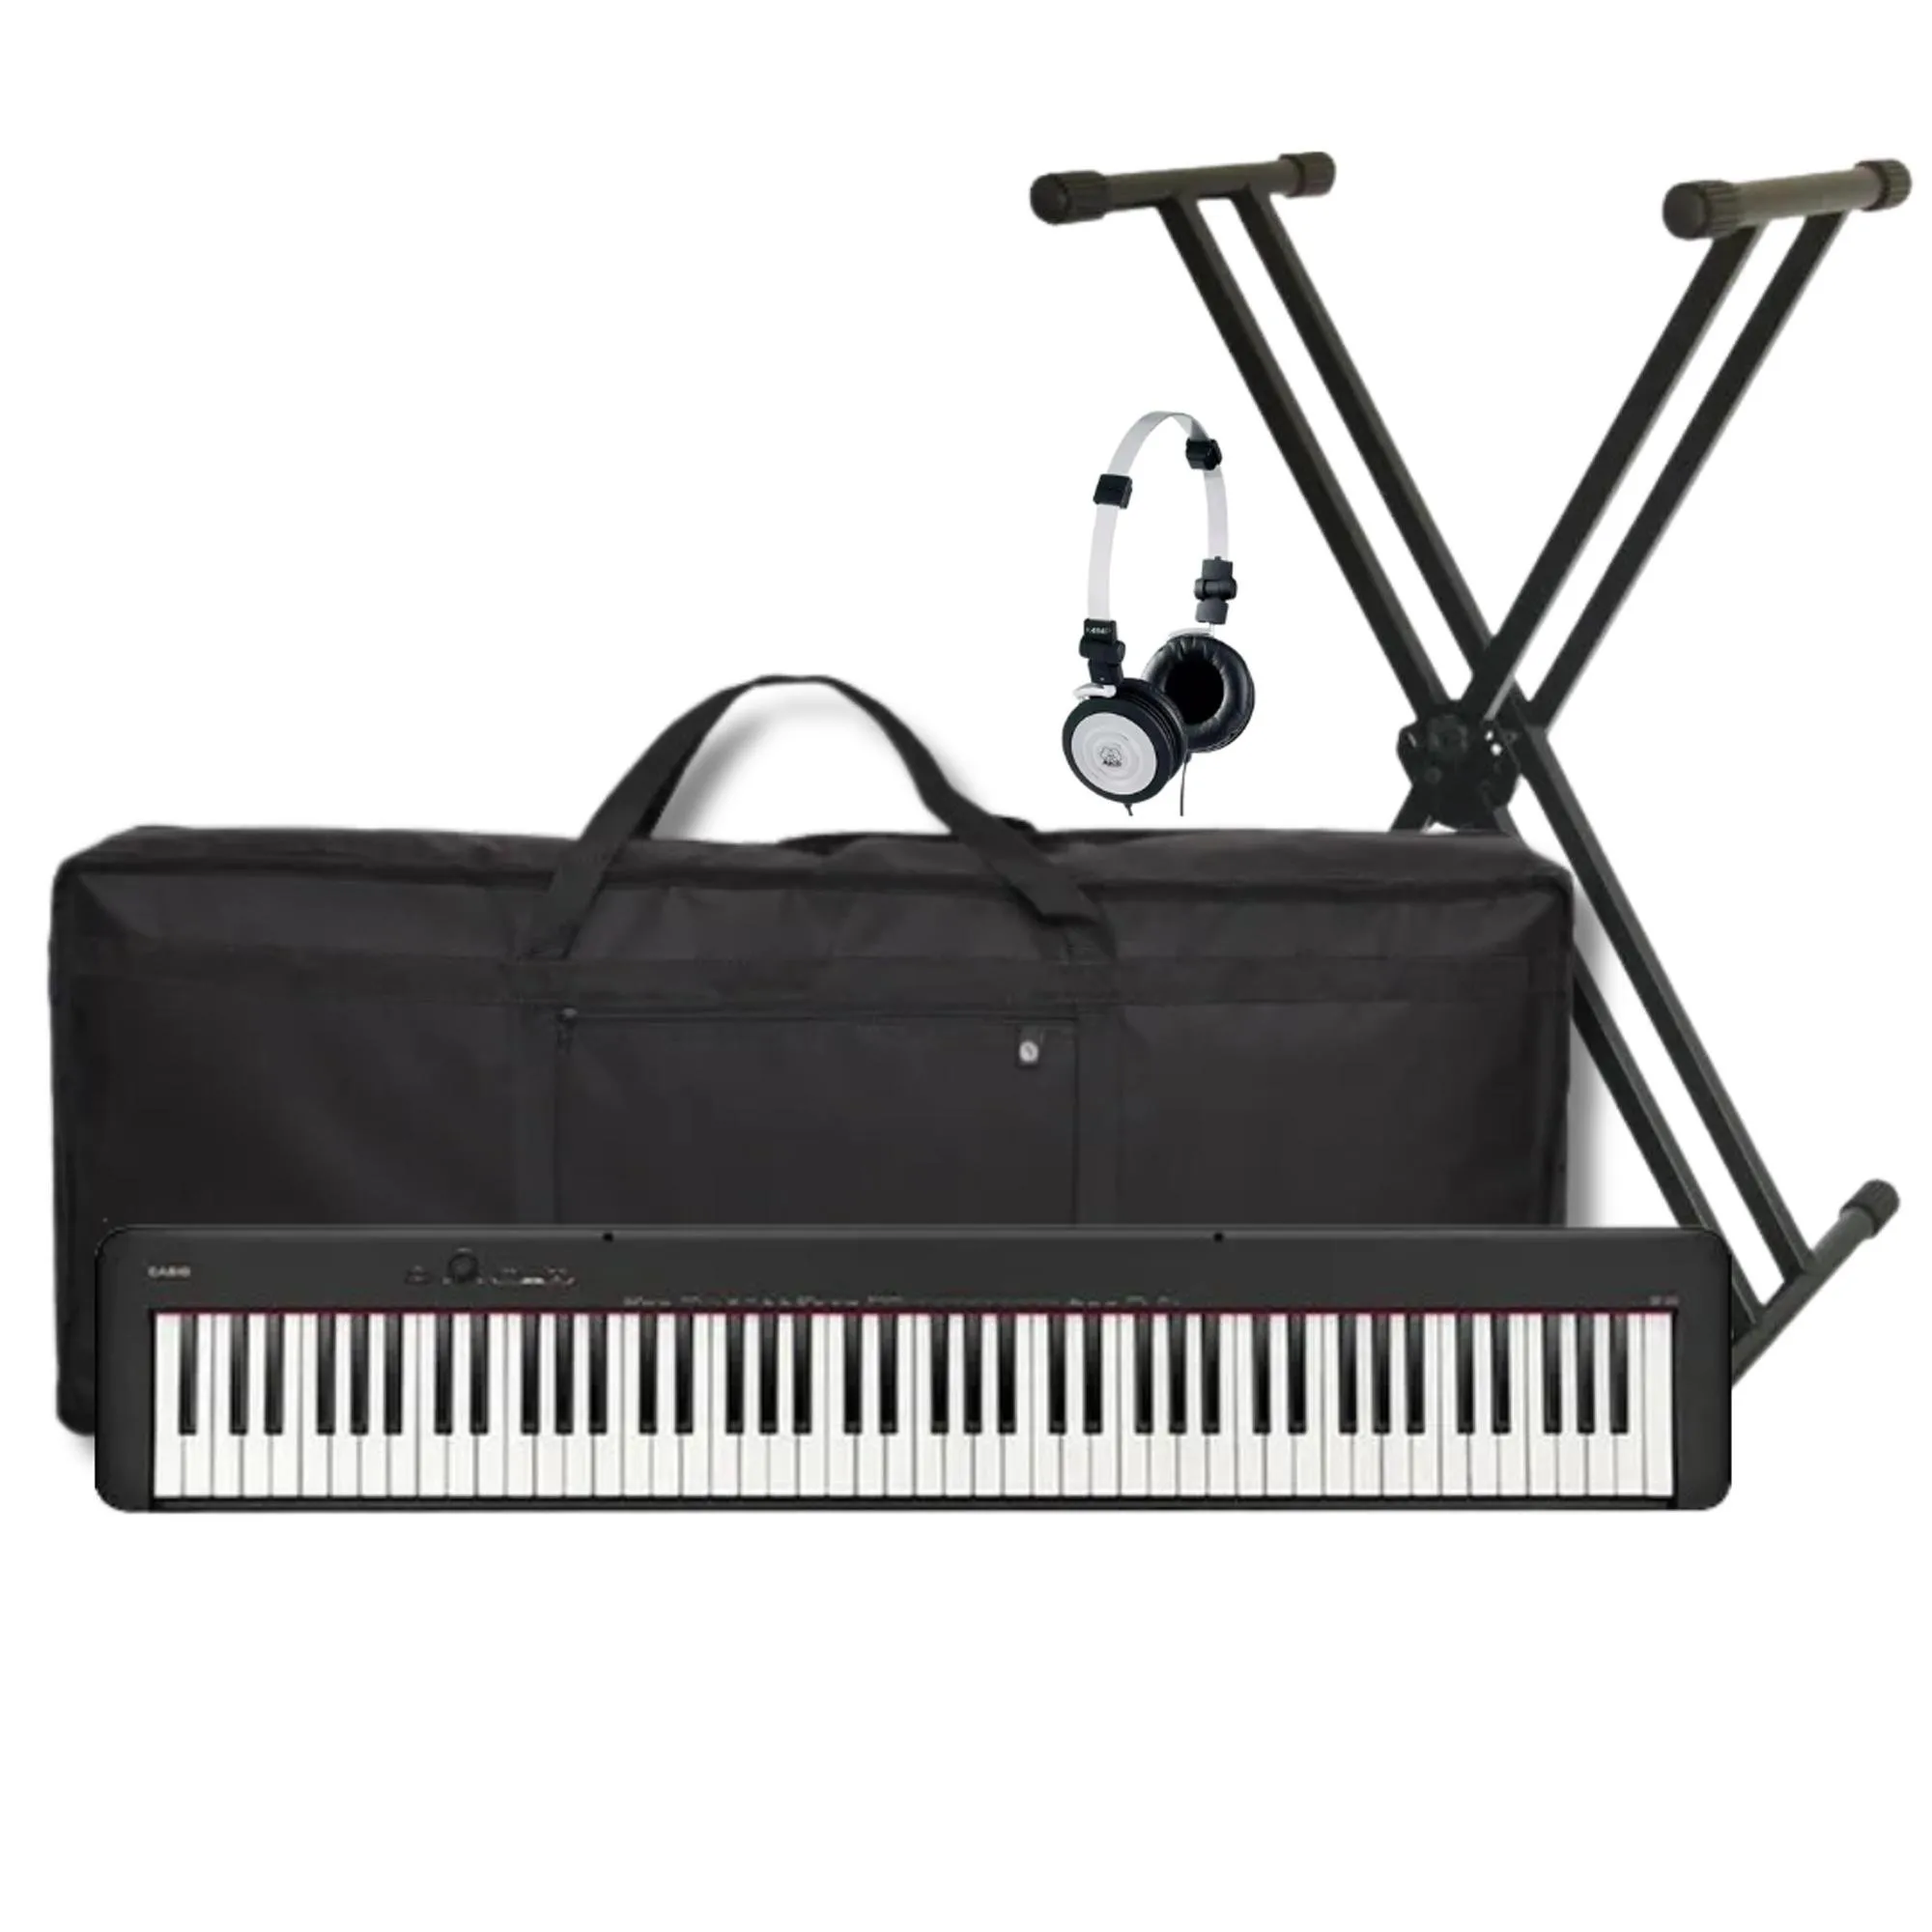 Kit Piano Digital Casio CDP-S110BK PT+ Suporte + Acessórios por 3.460,00 à vista no boleto/pix ou parcele em até 12x sem juros. Compre na loja Mundomax!